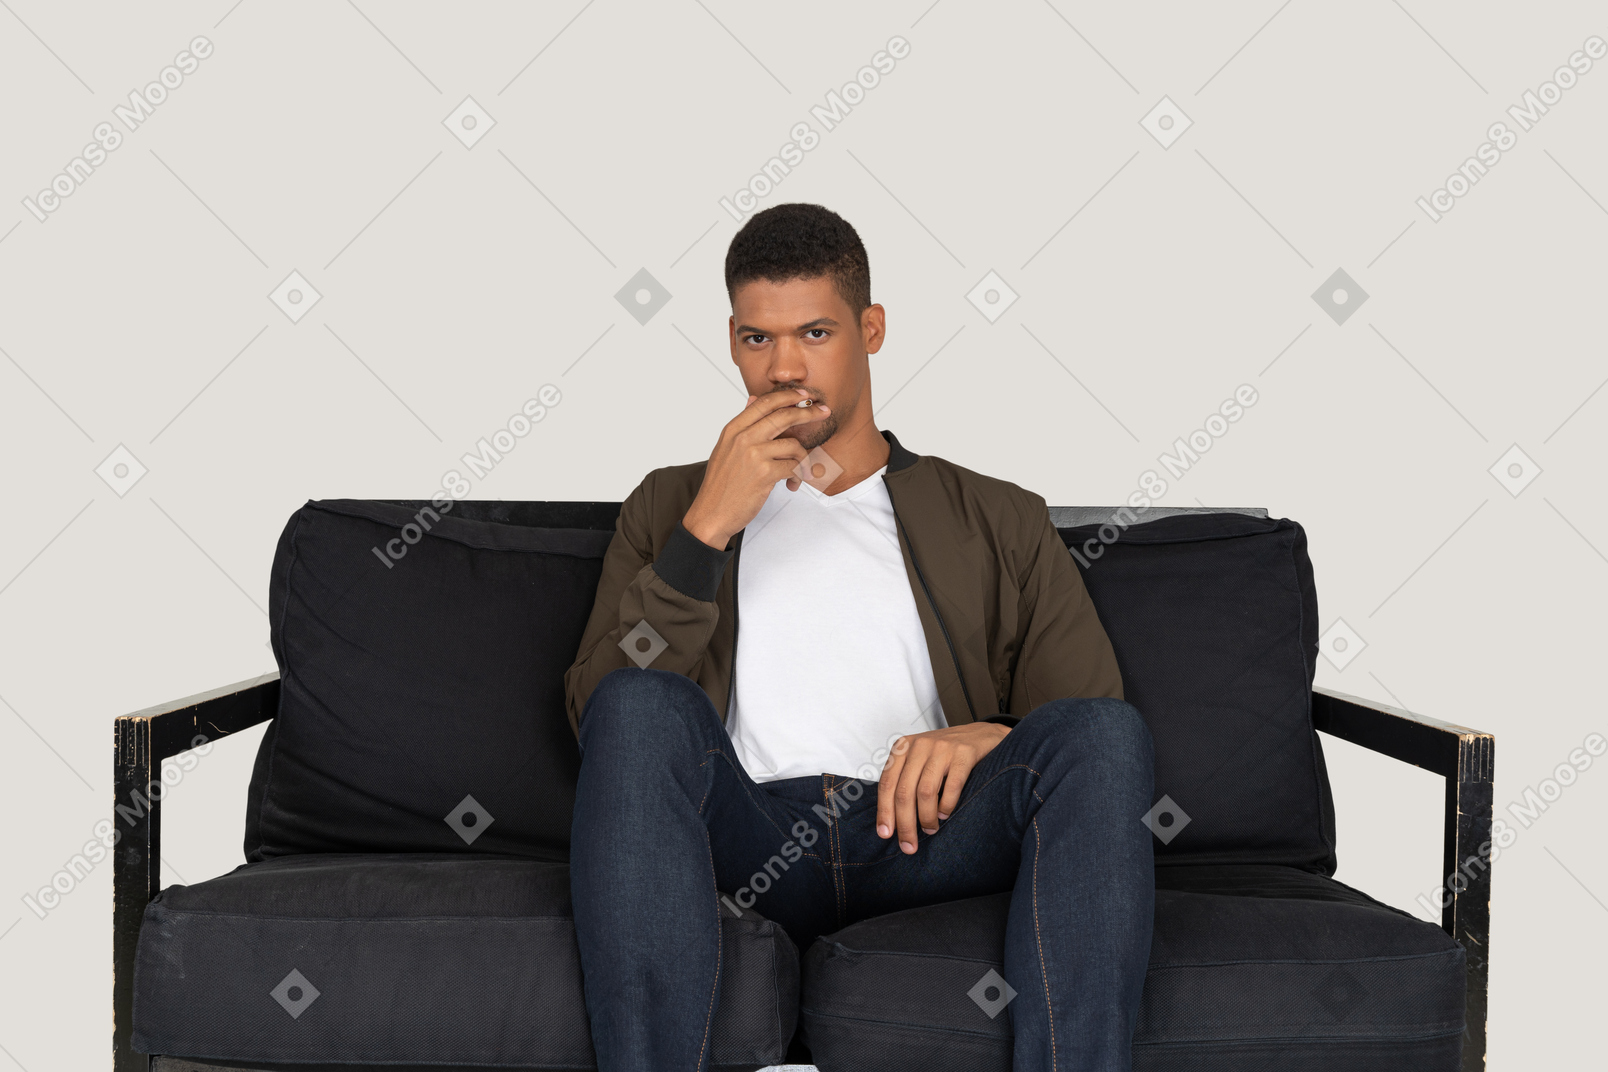 Vista frontal de um jovem sentado em um sofá segurando um cigarro na boca